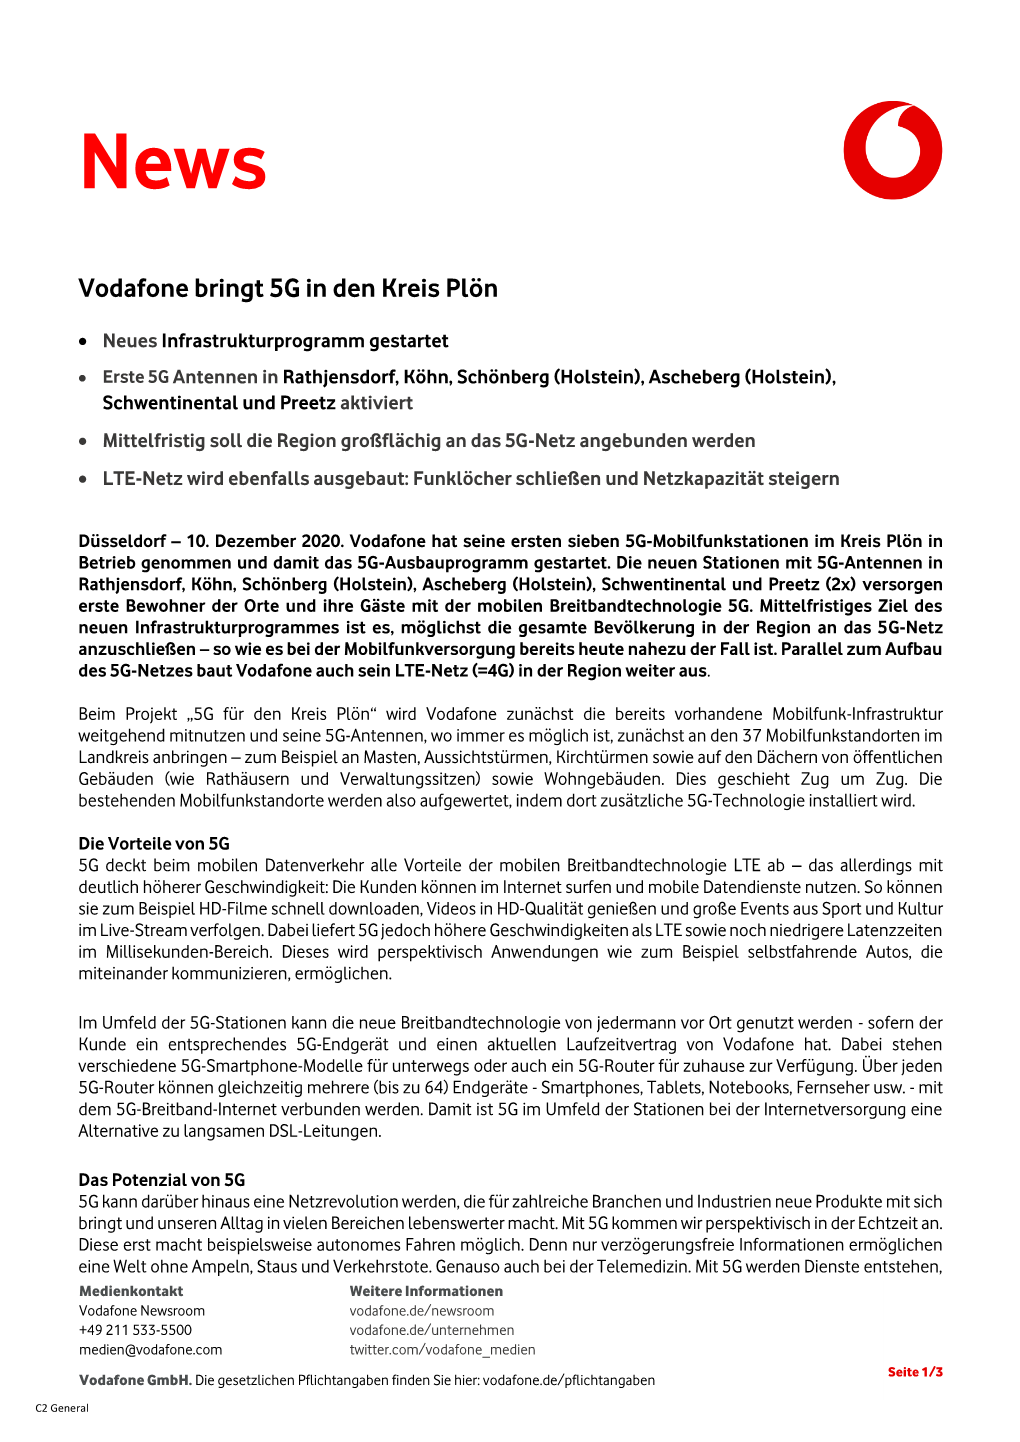 Vodafone Bringt 5G in Den Kreis Plön